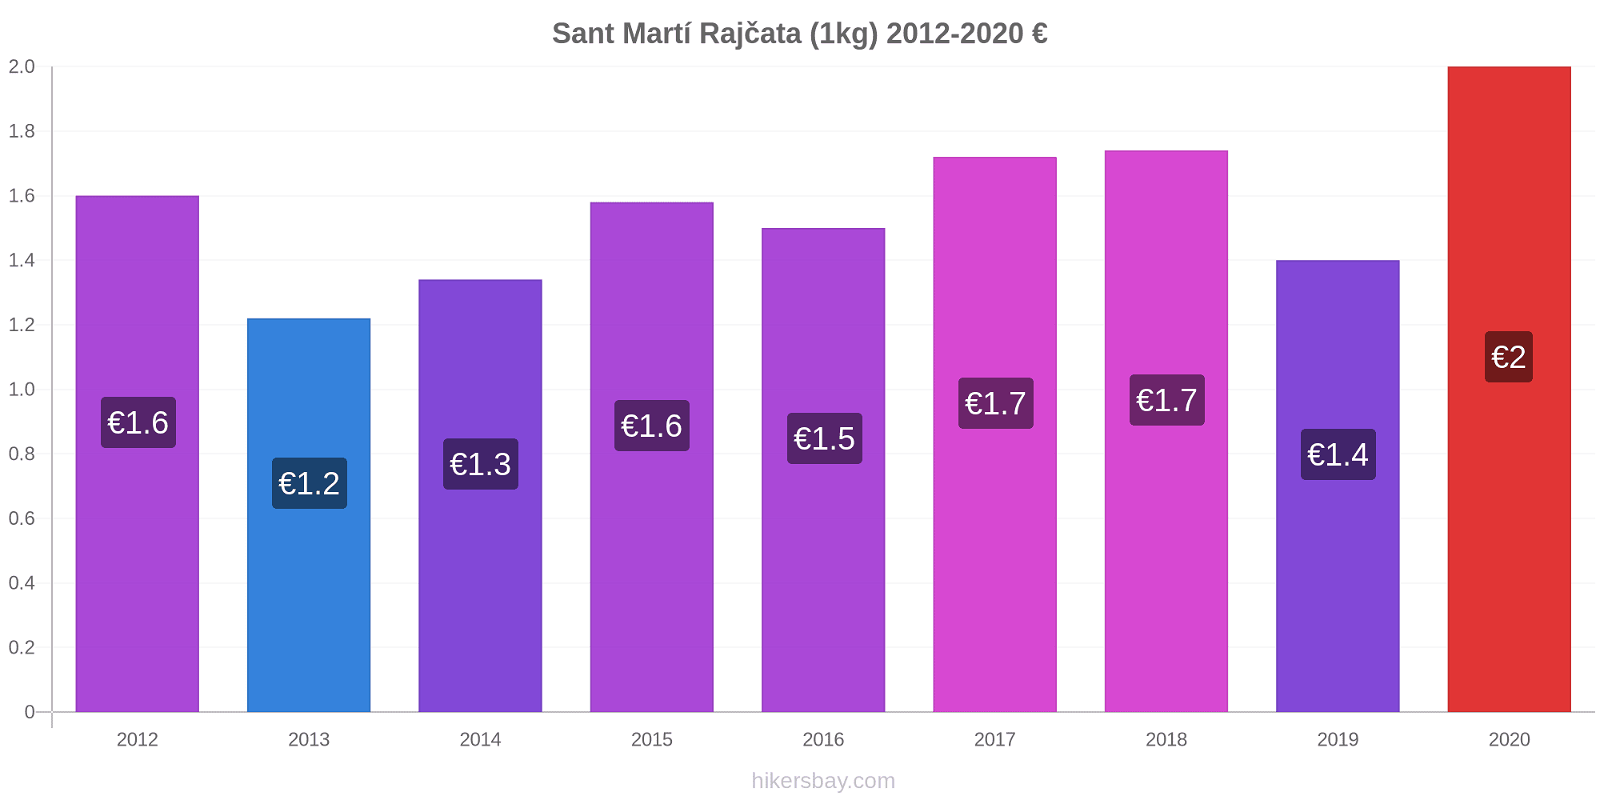 Sant Martí změny cen Rajčata (1kg) hikersbay.com